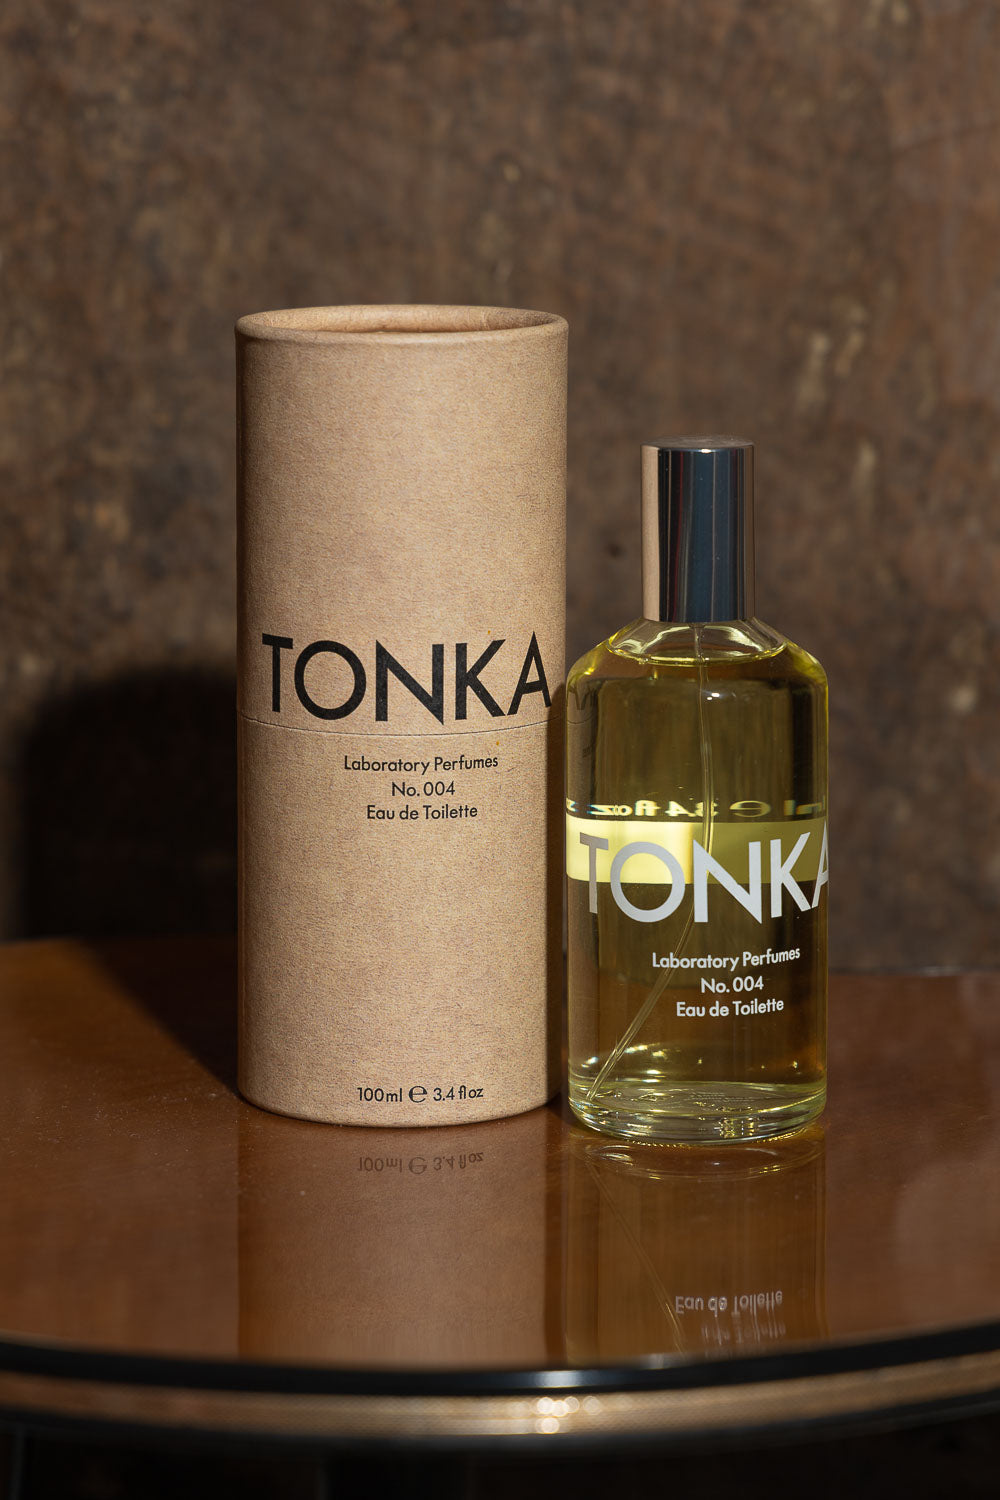 Laboratory Perfumes Tonka 100ml